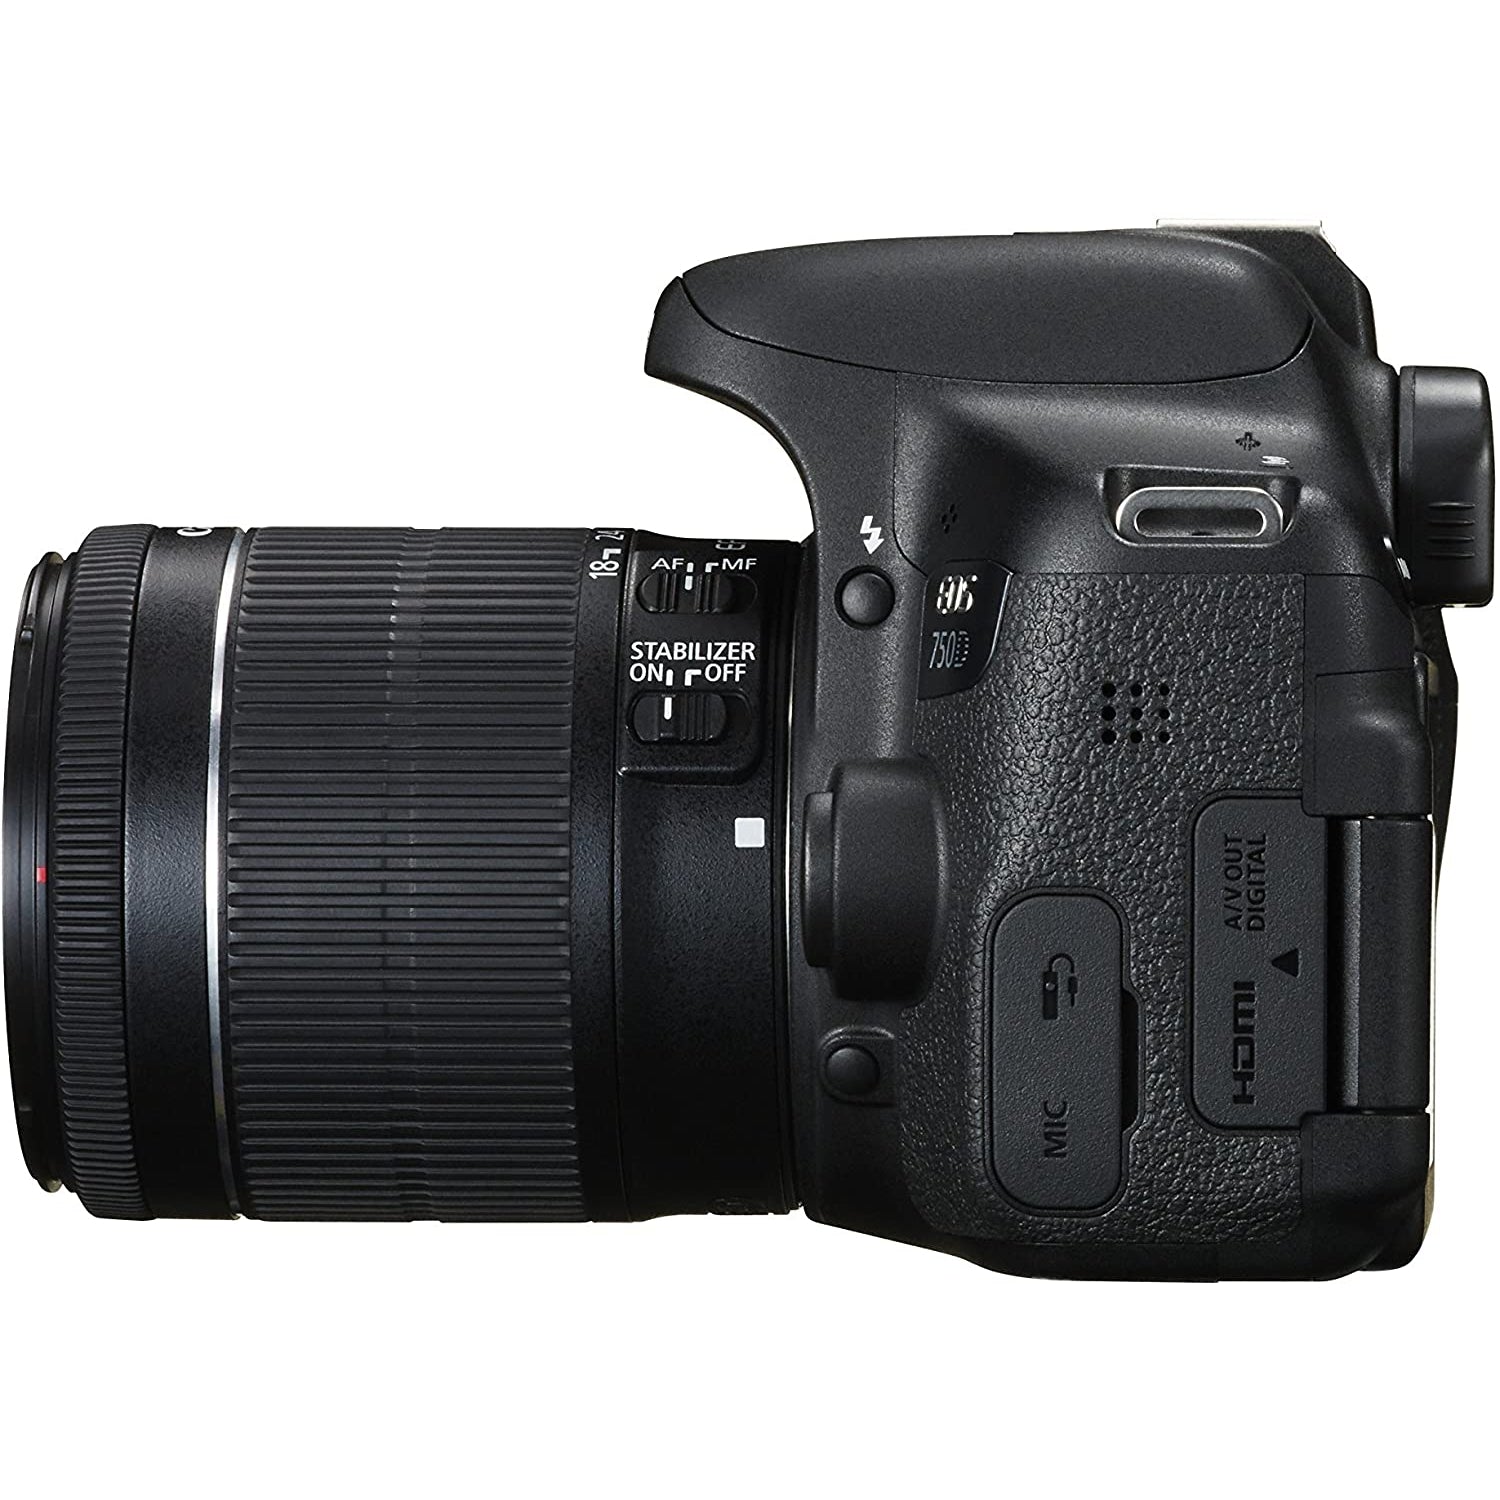 Canon EOS 750D Digital SLR Picture Camera - Black